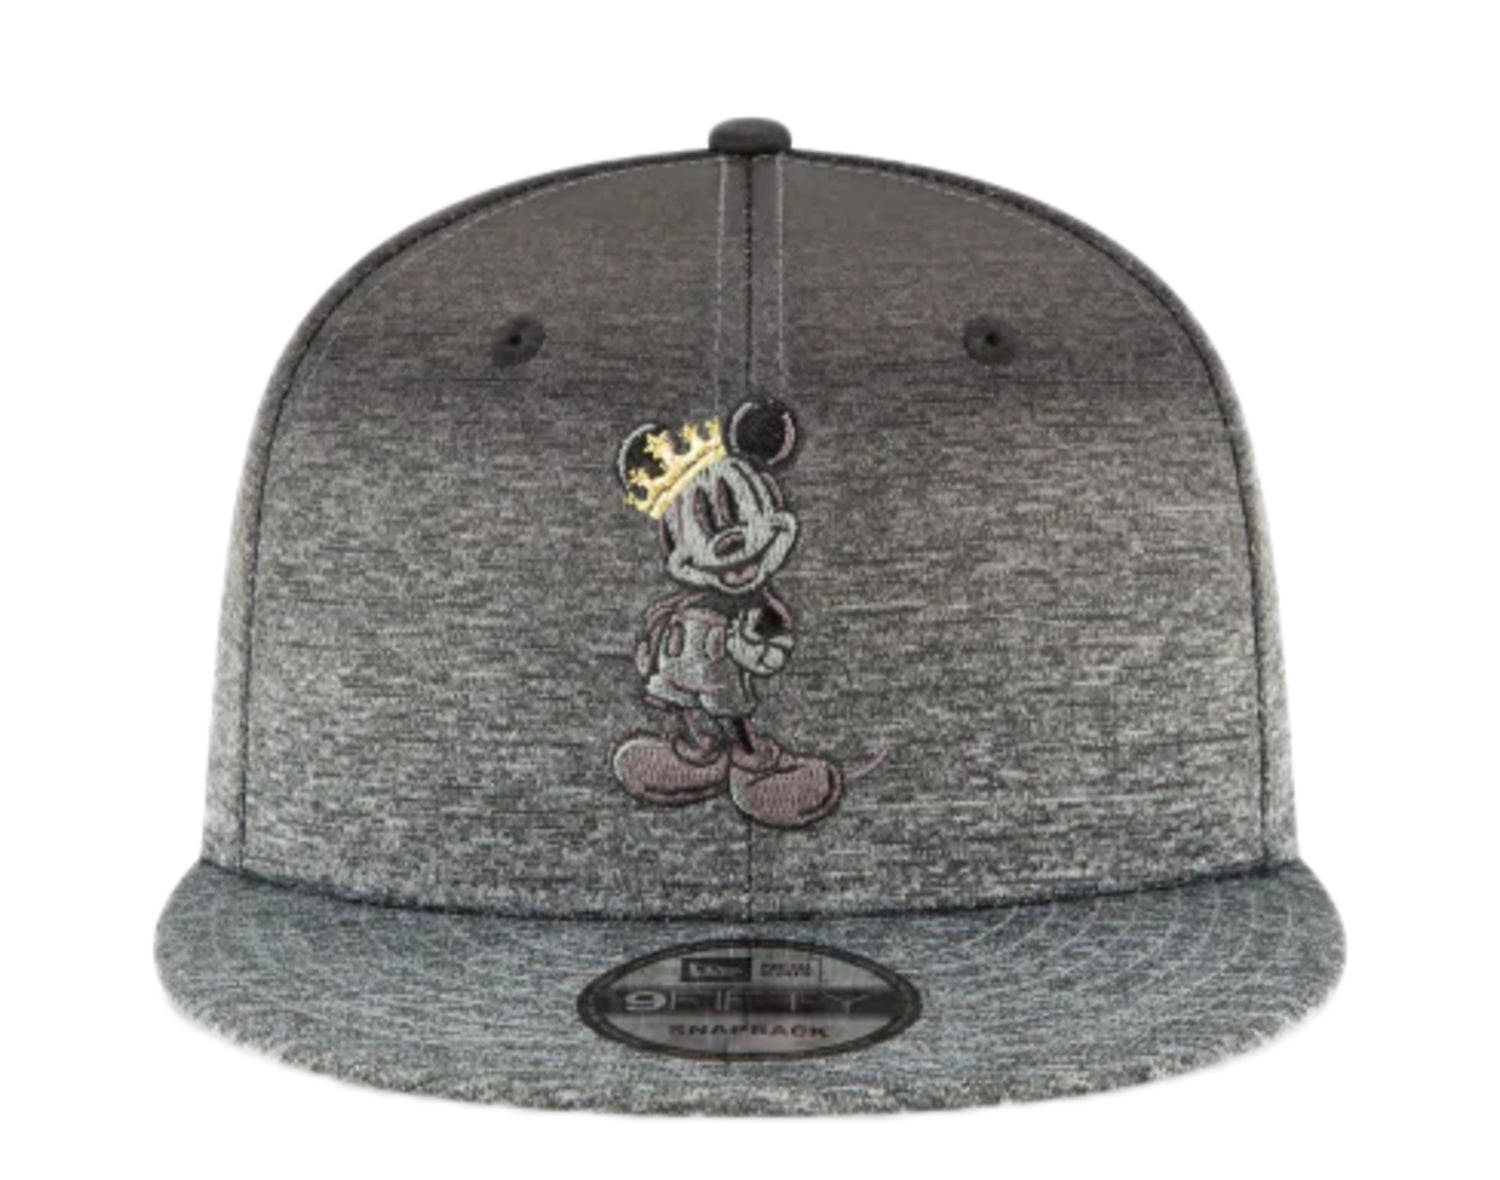 New Era x Disney 9Fifty Mickey Mouse Shadow Fade Snapback Hat